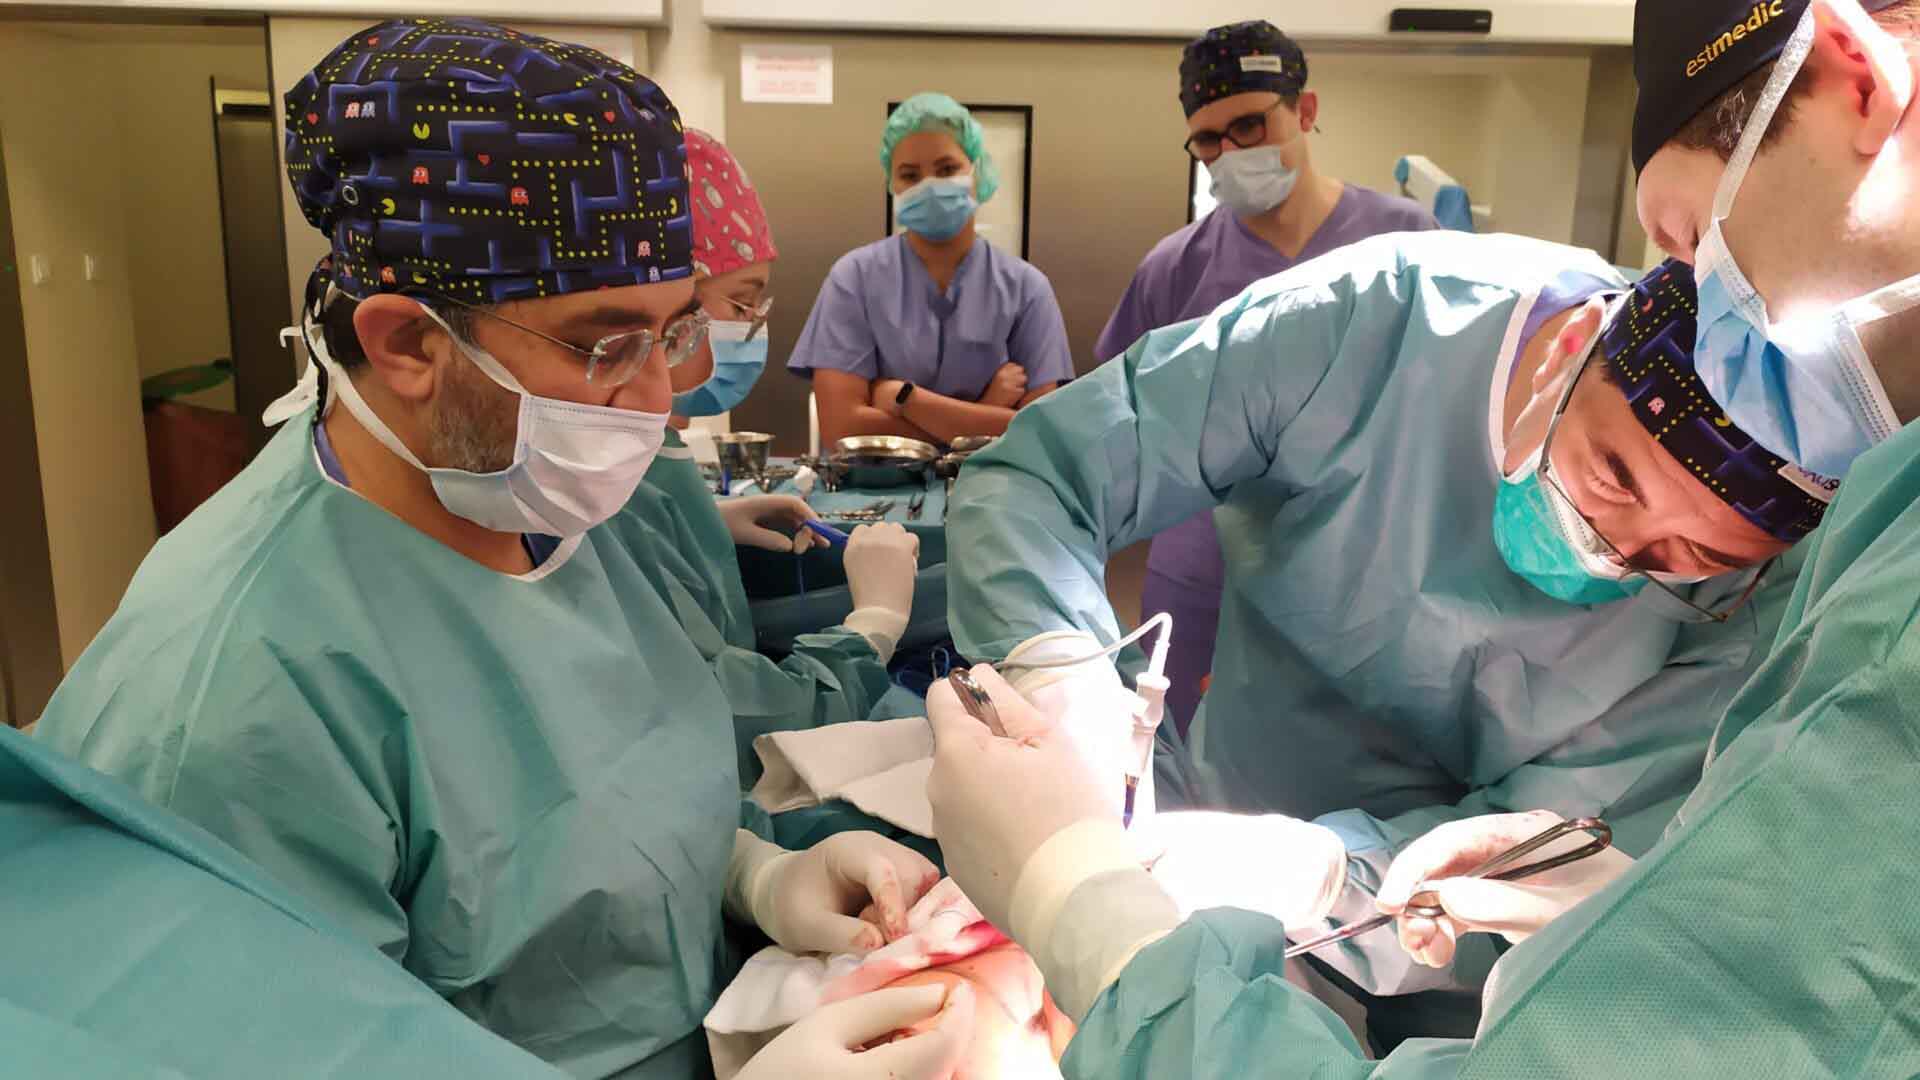 Chirurdzy w czasie operacji